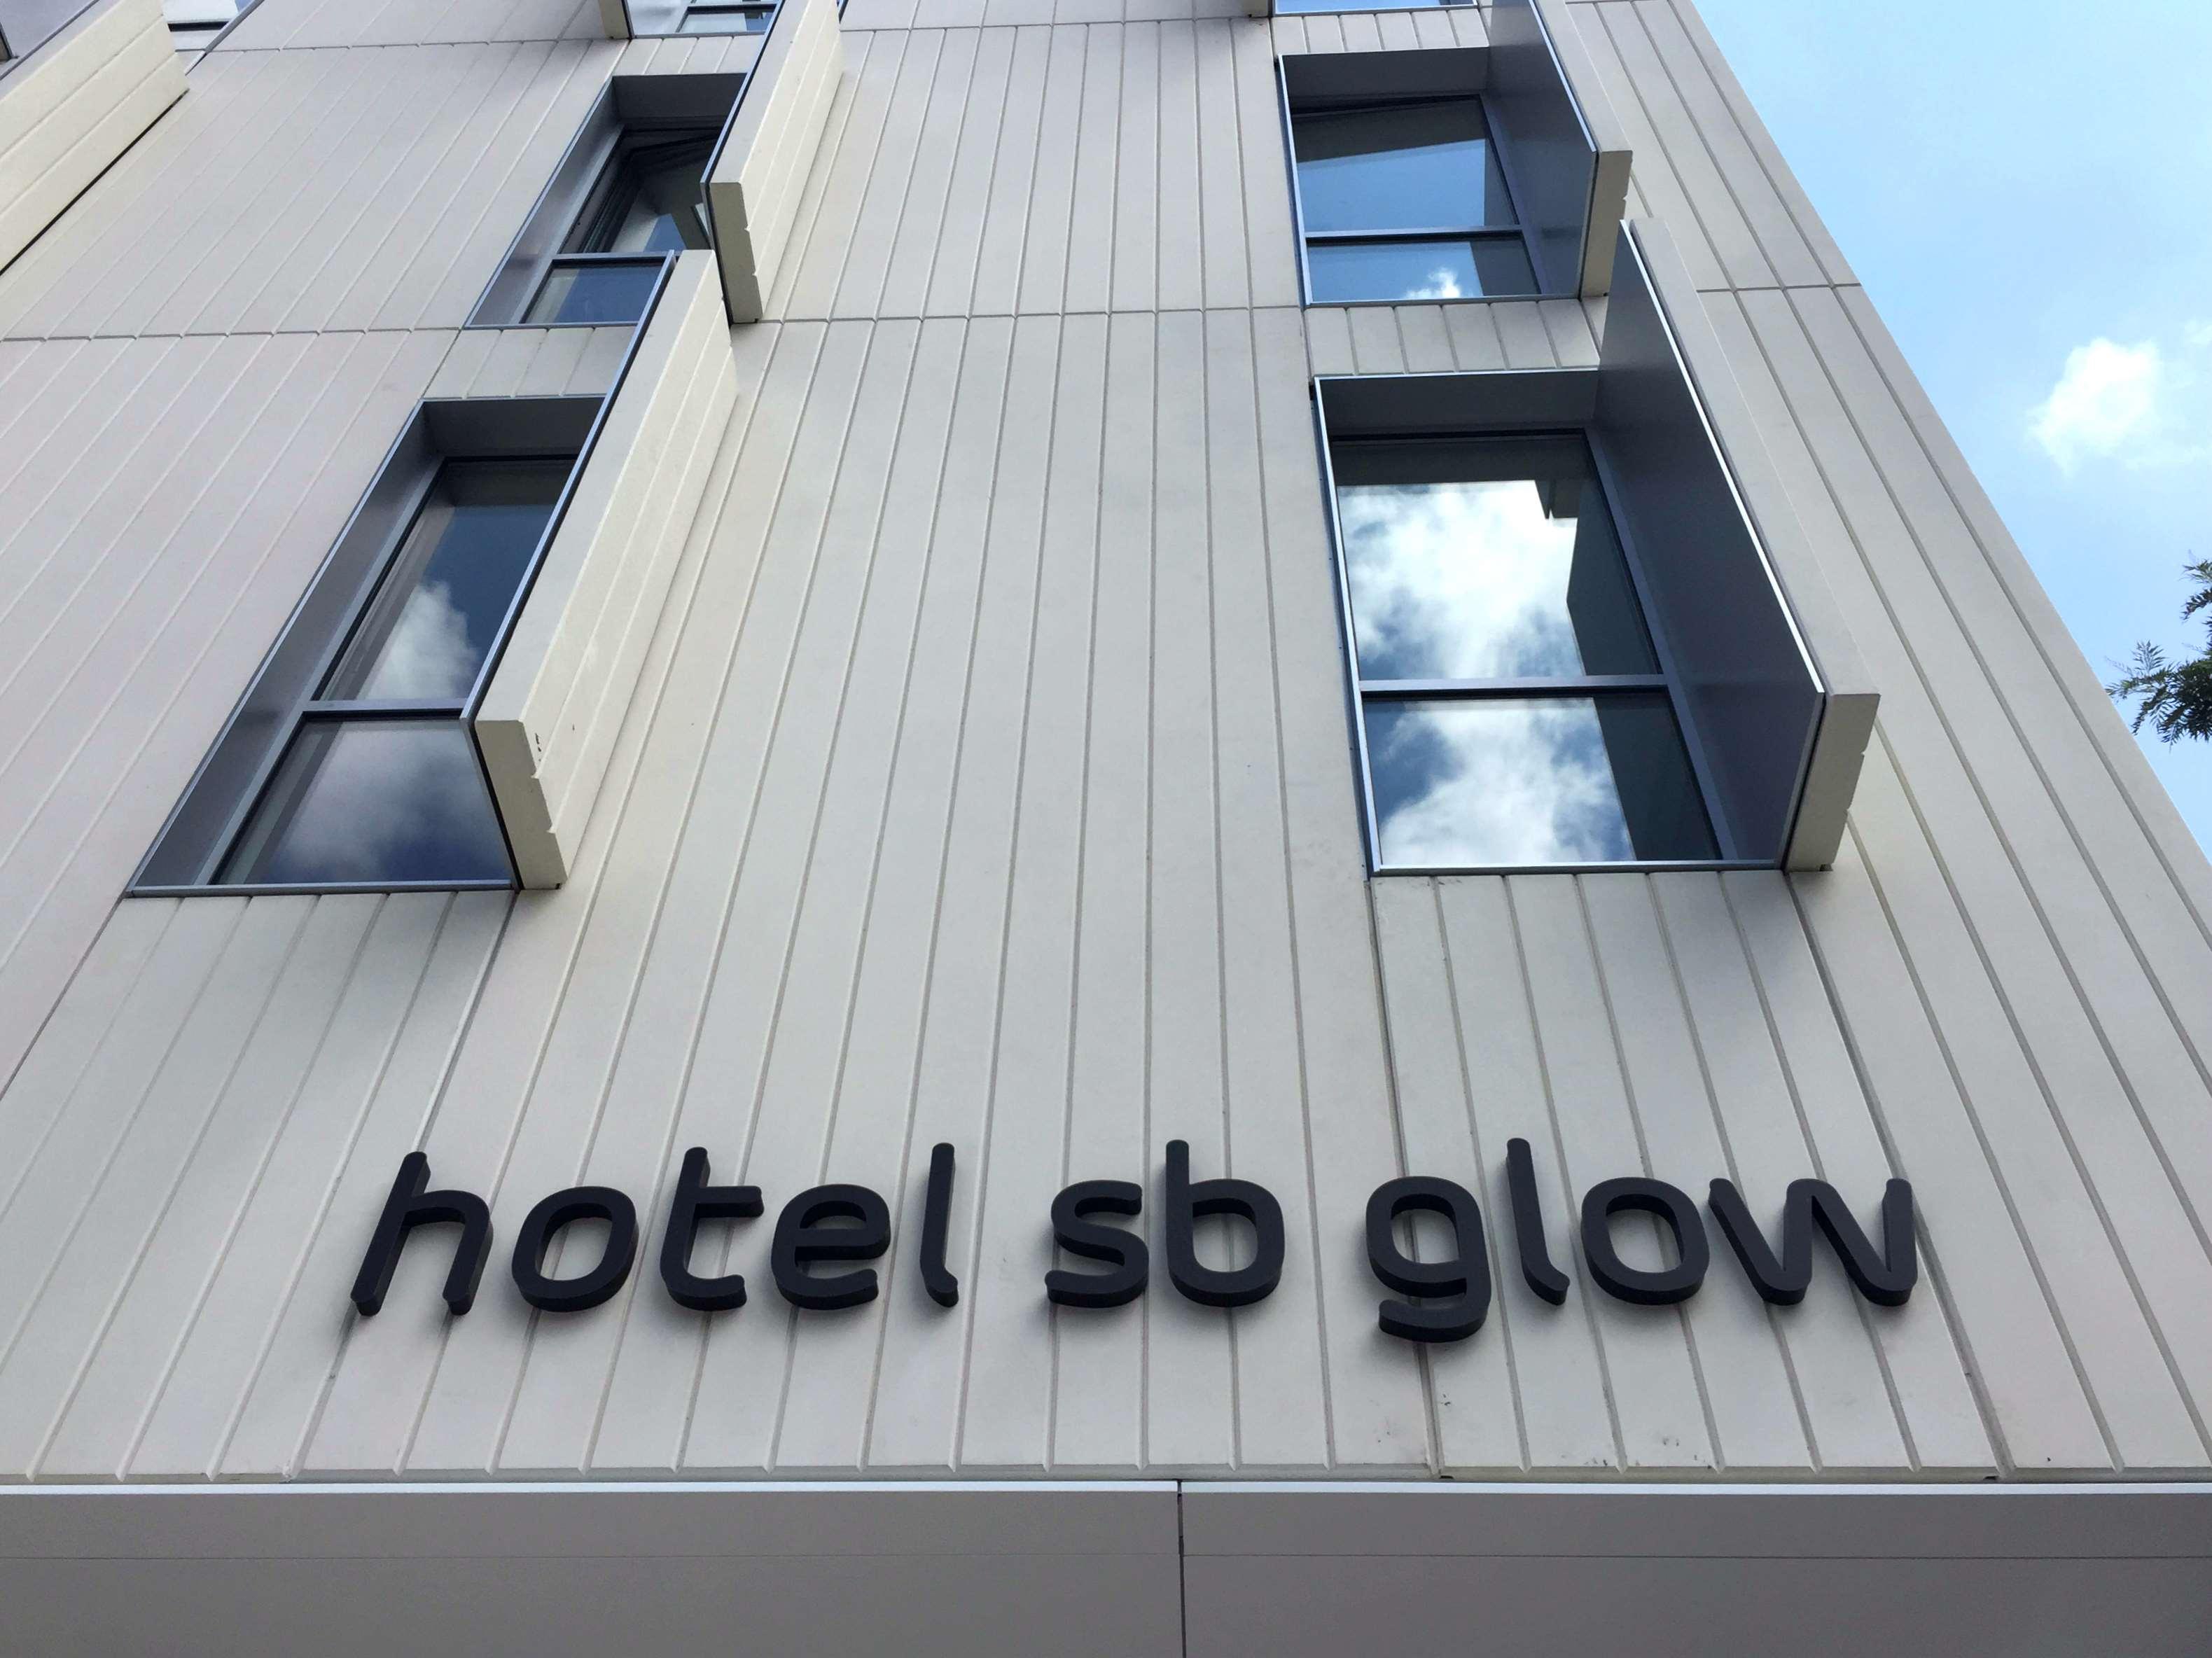 Hotel Hotel SB Glow